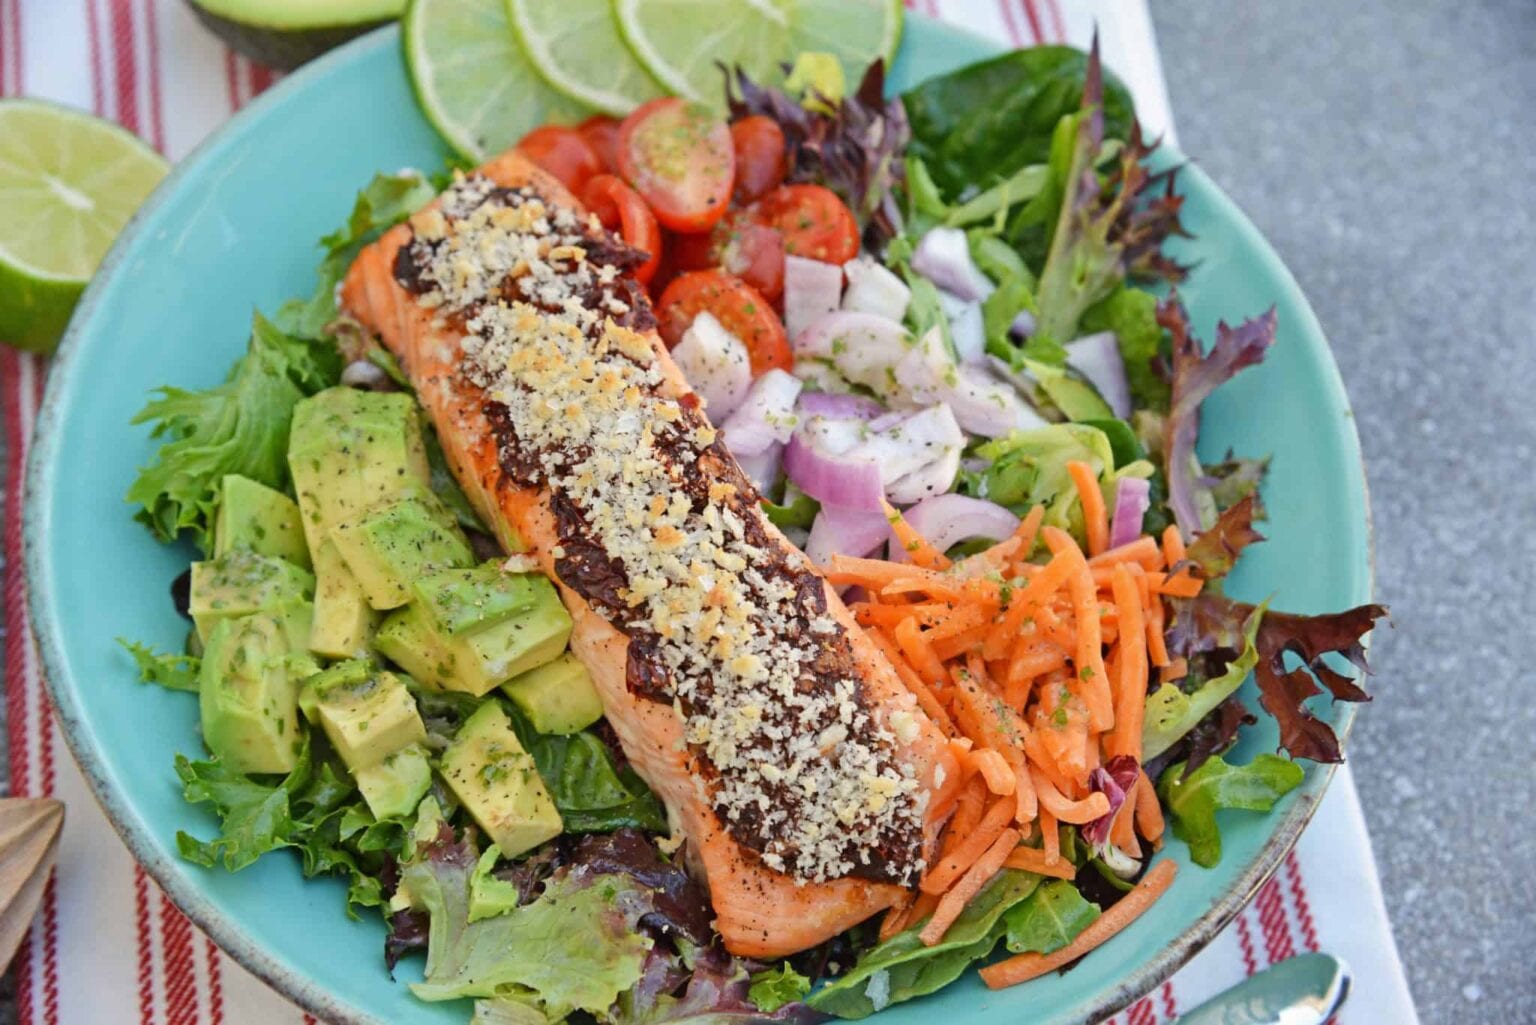 Crispy Chipotle Salmon Salad - A Delectable Salmon Salad Recipe